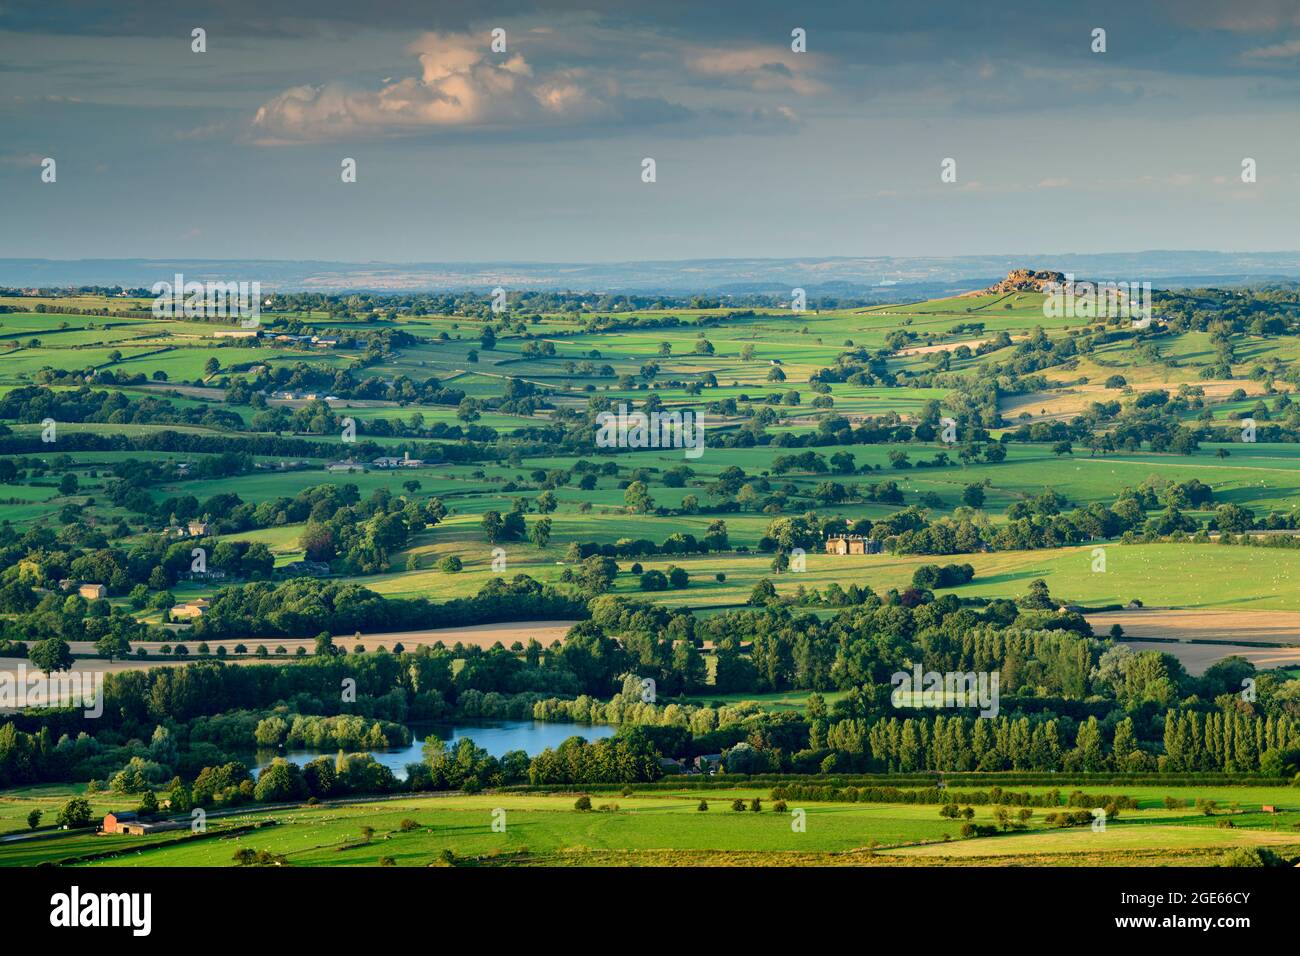 Vista panorámica de la campiña de Wharfedale desde Otley Chevin (amplio valle verde iluminado por el sol, campos de cultivo, alta cielada, cielo azul) - West Yorkshire, Inglaterra Reino Unido. Foto de stock